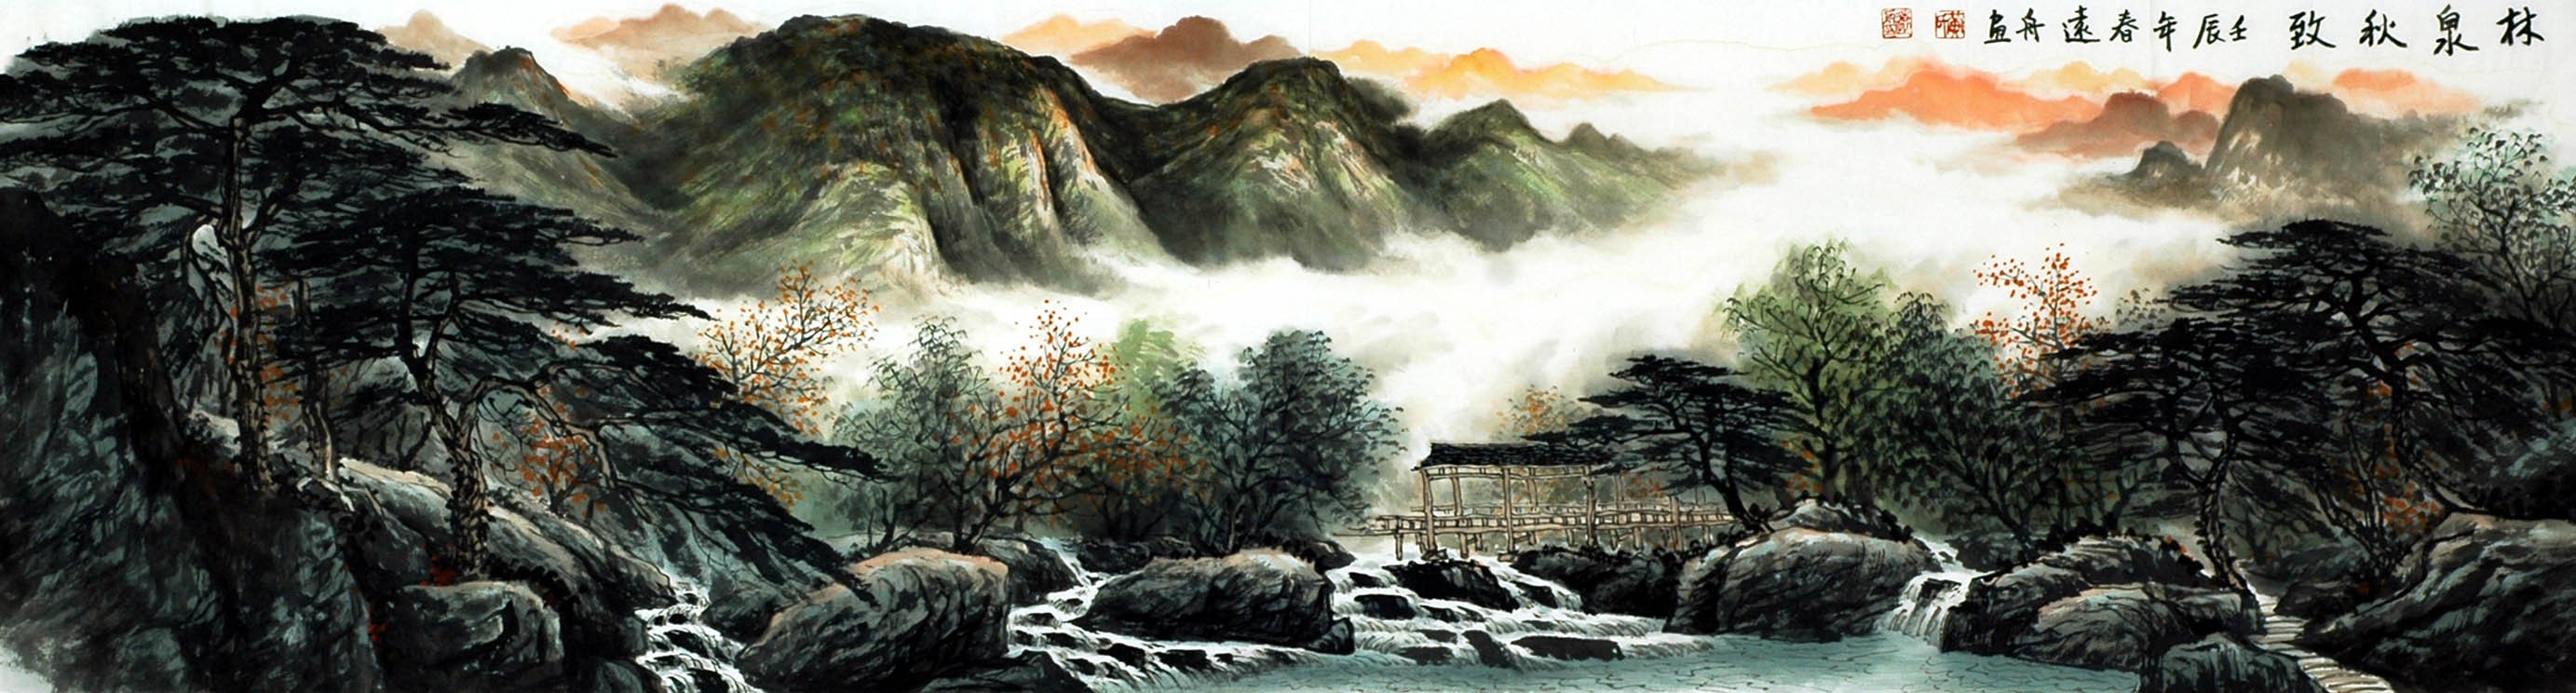 Chinese Landscape Painting - CNAG008101